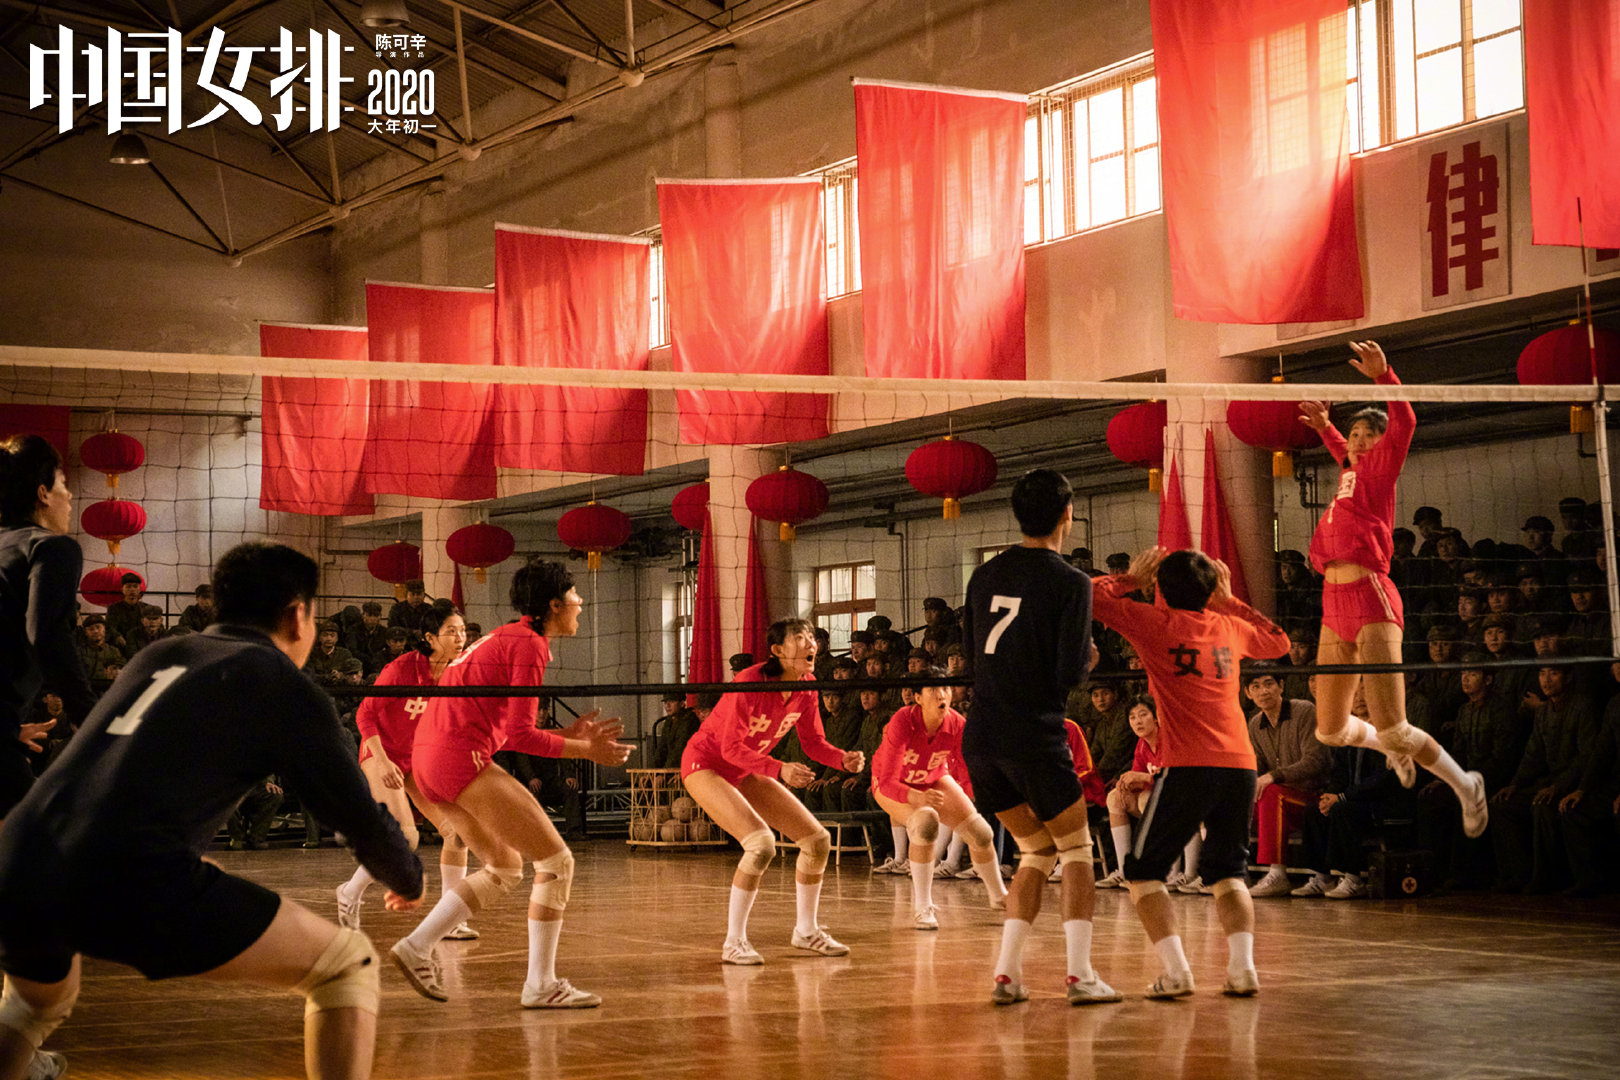 《中国女排》全新剧照曝光 赛场拼搏挥洒热血与青春